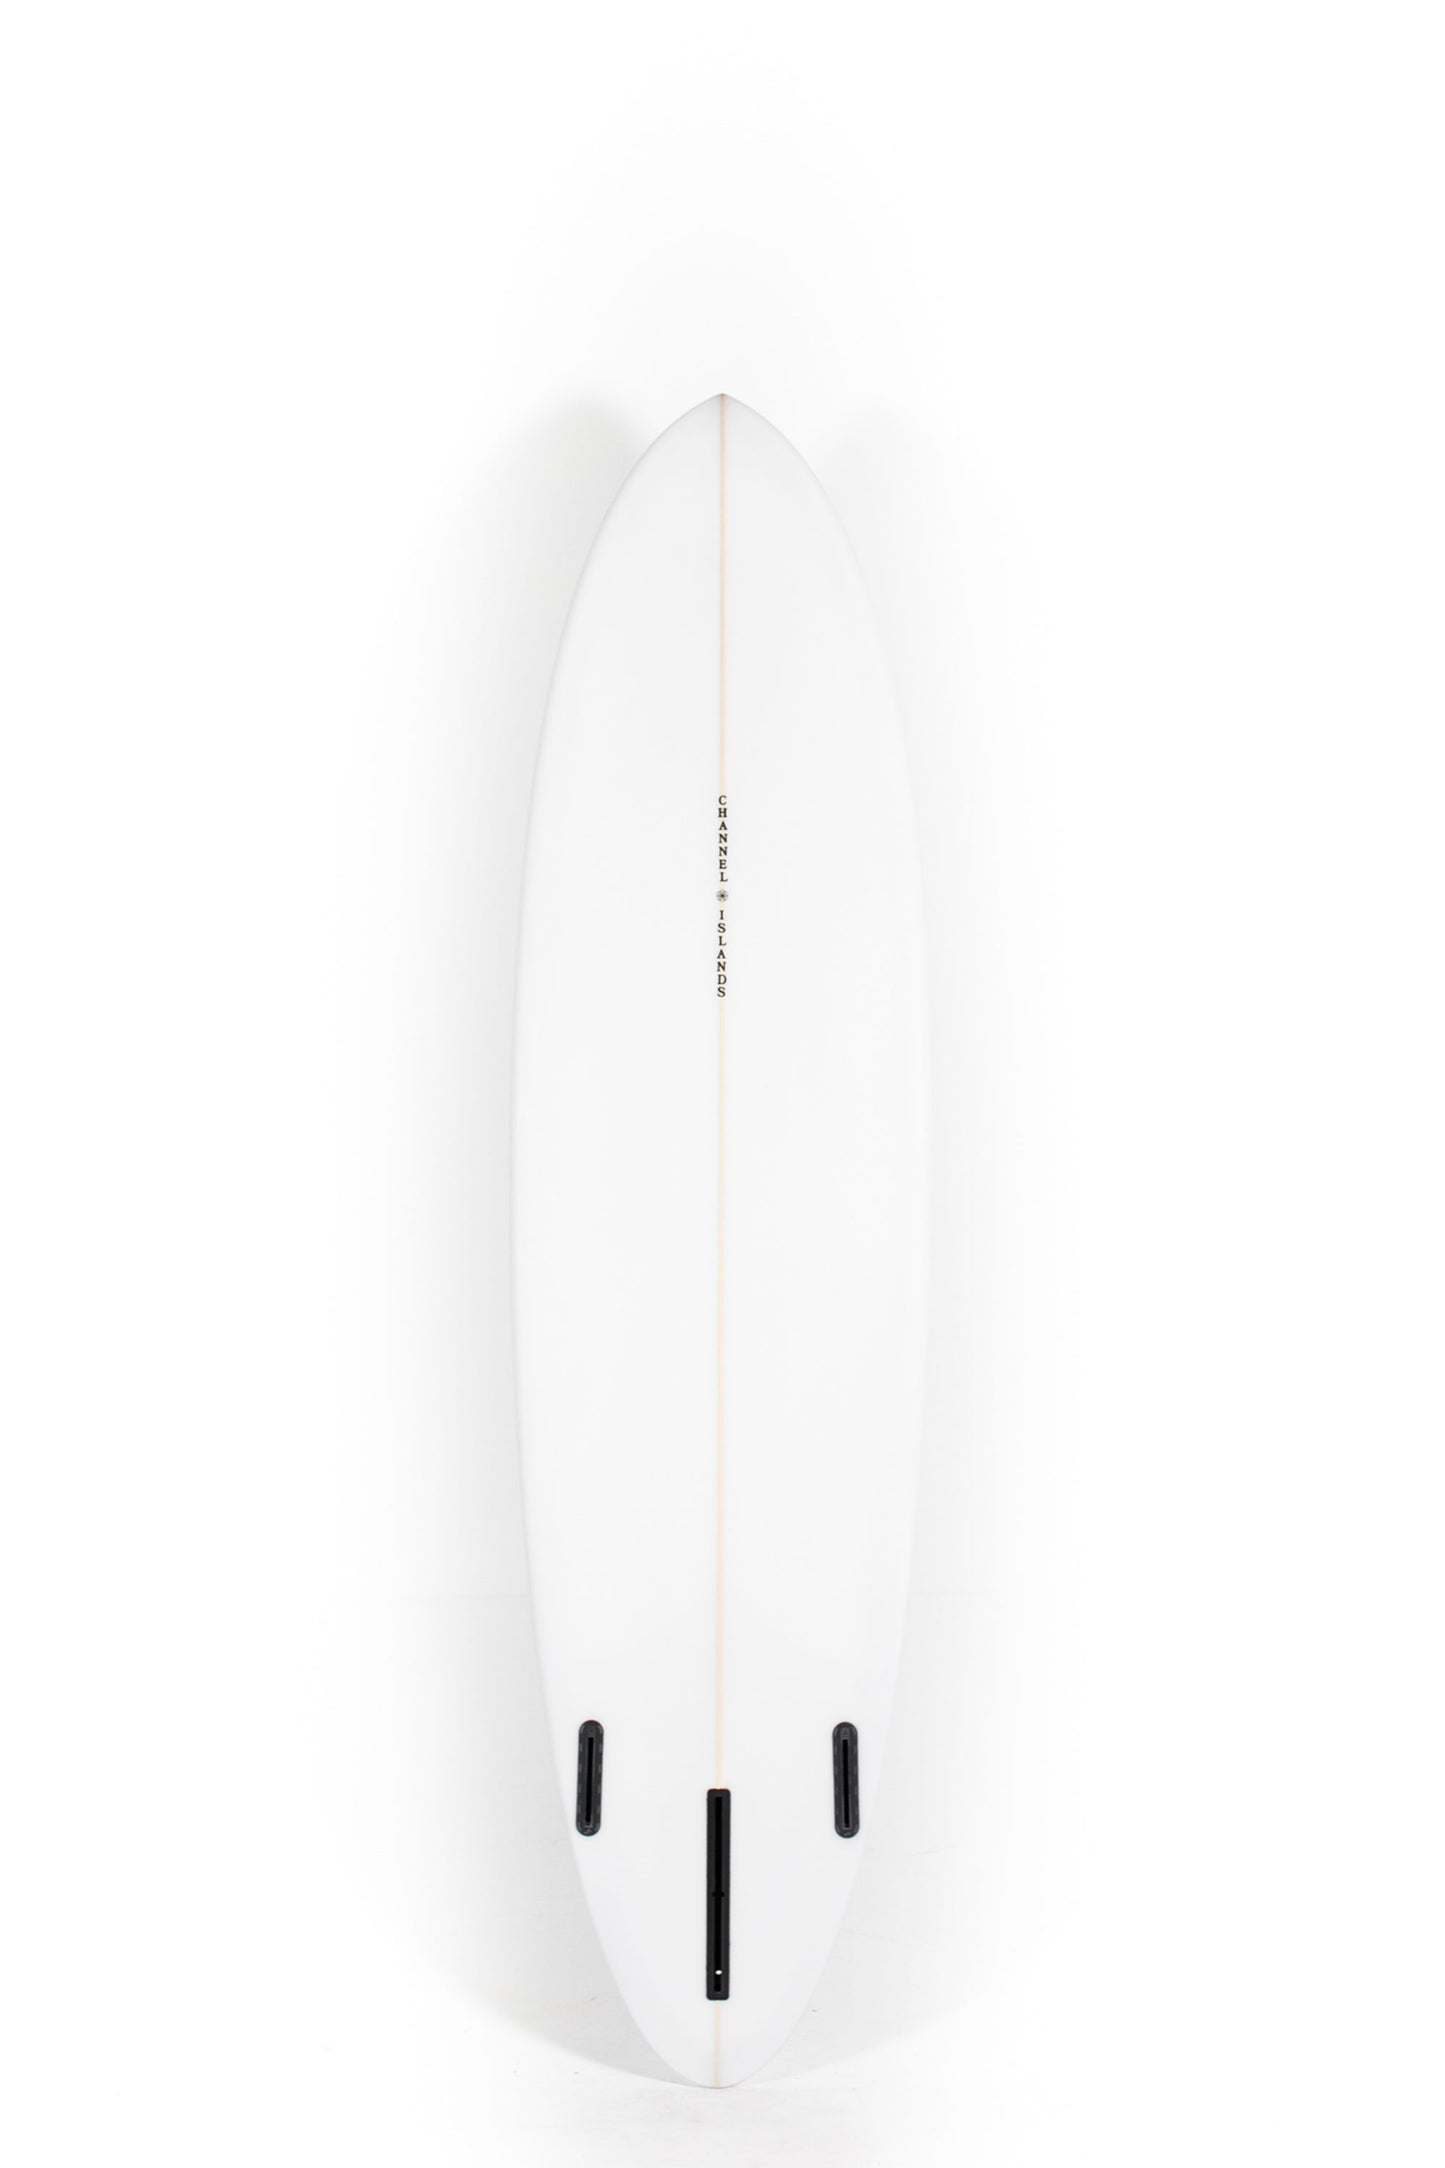 Pukas Surf Shop - Copia de Channel Islands - CI MID - 7'4" x 21 1/2 x 2 13/16 - 48,94L - CI28888